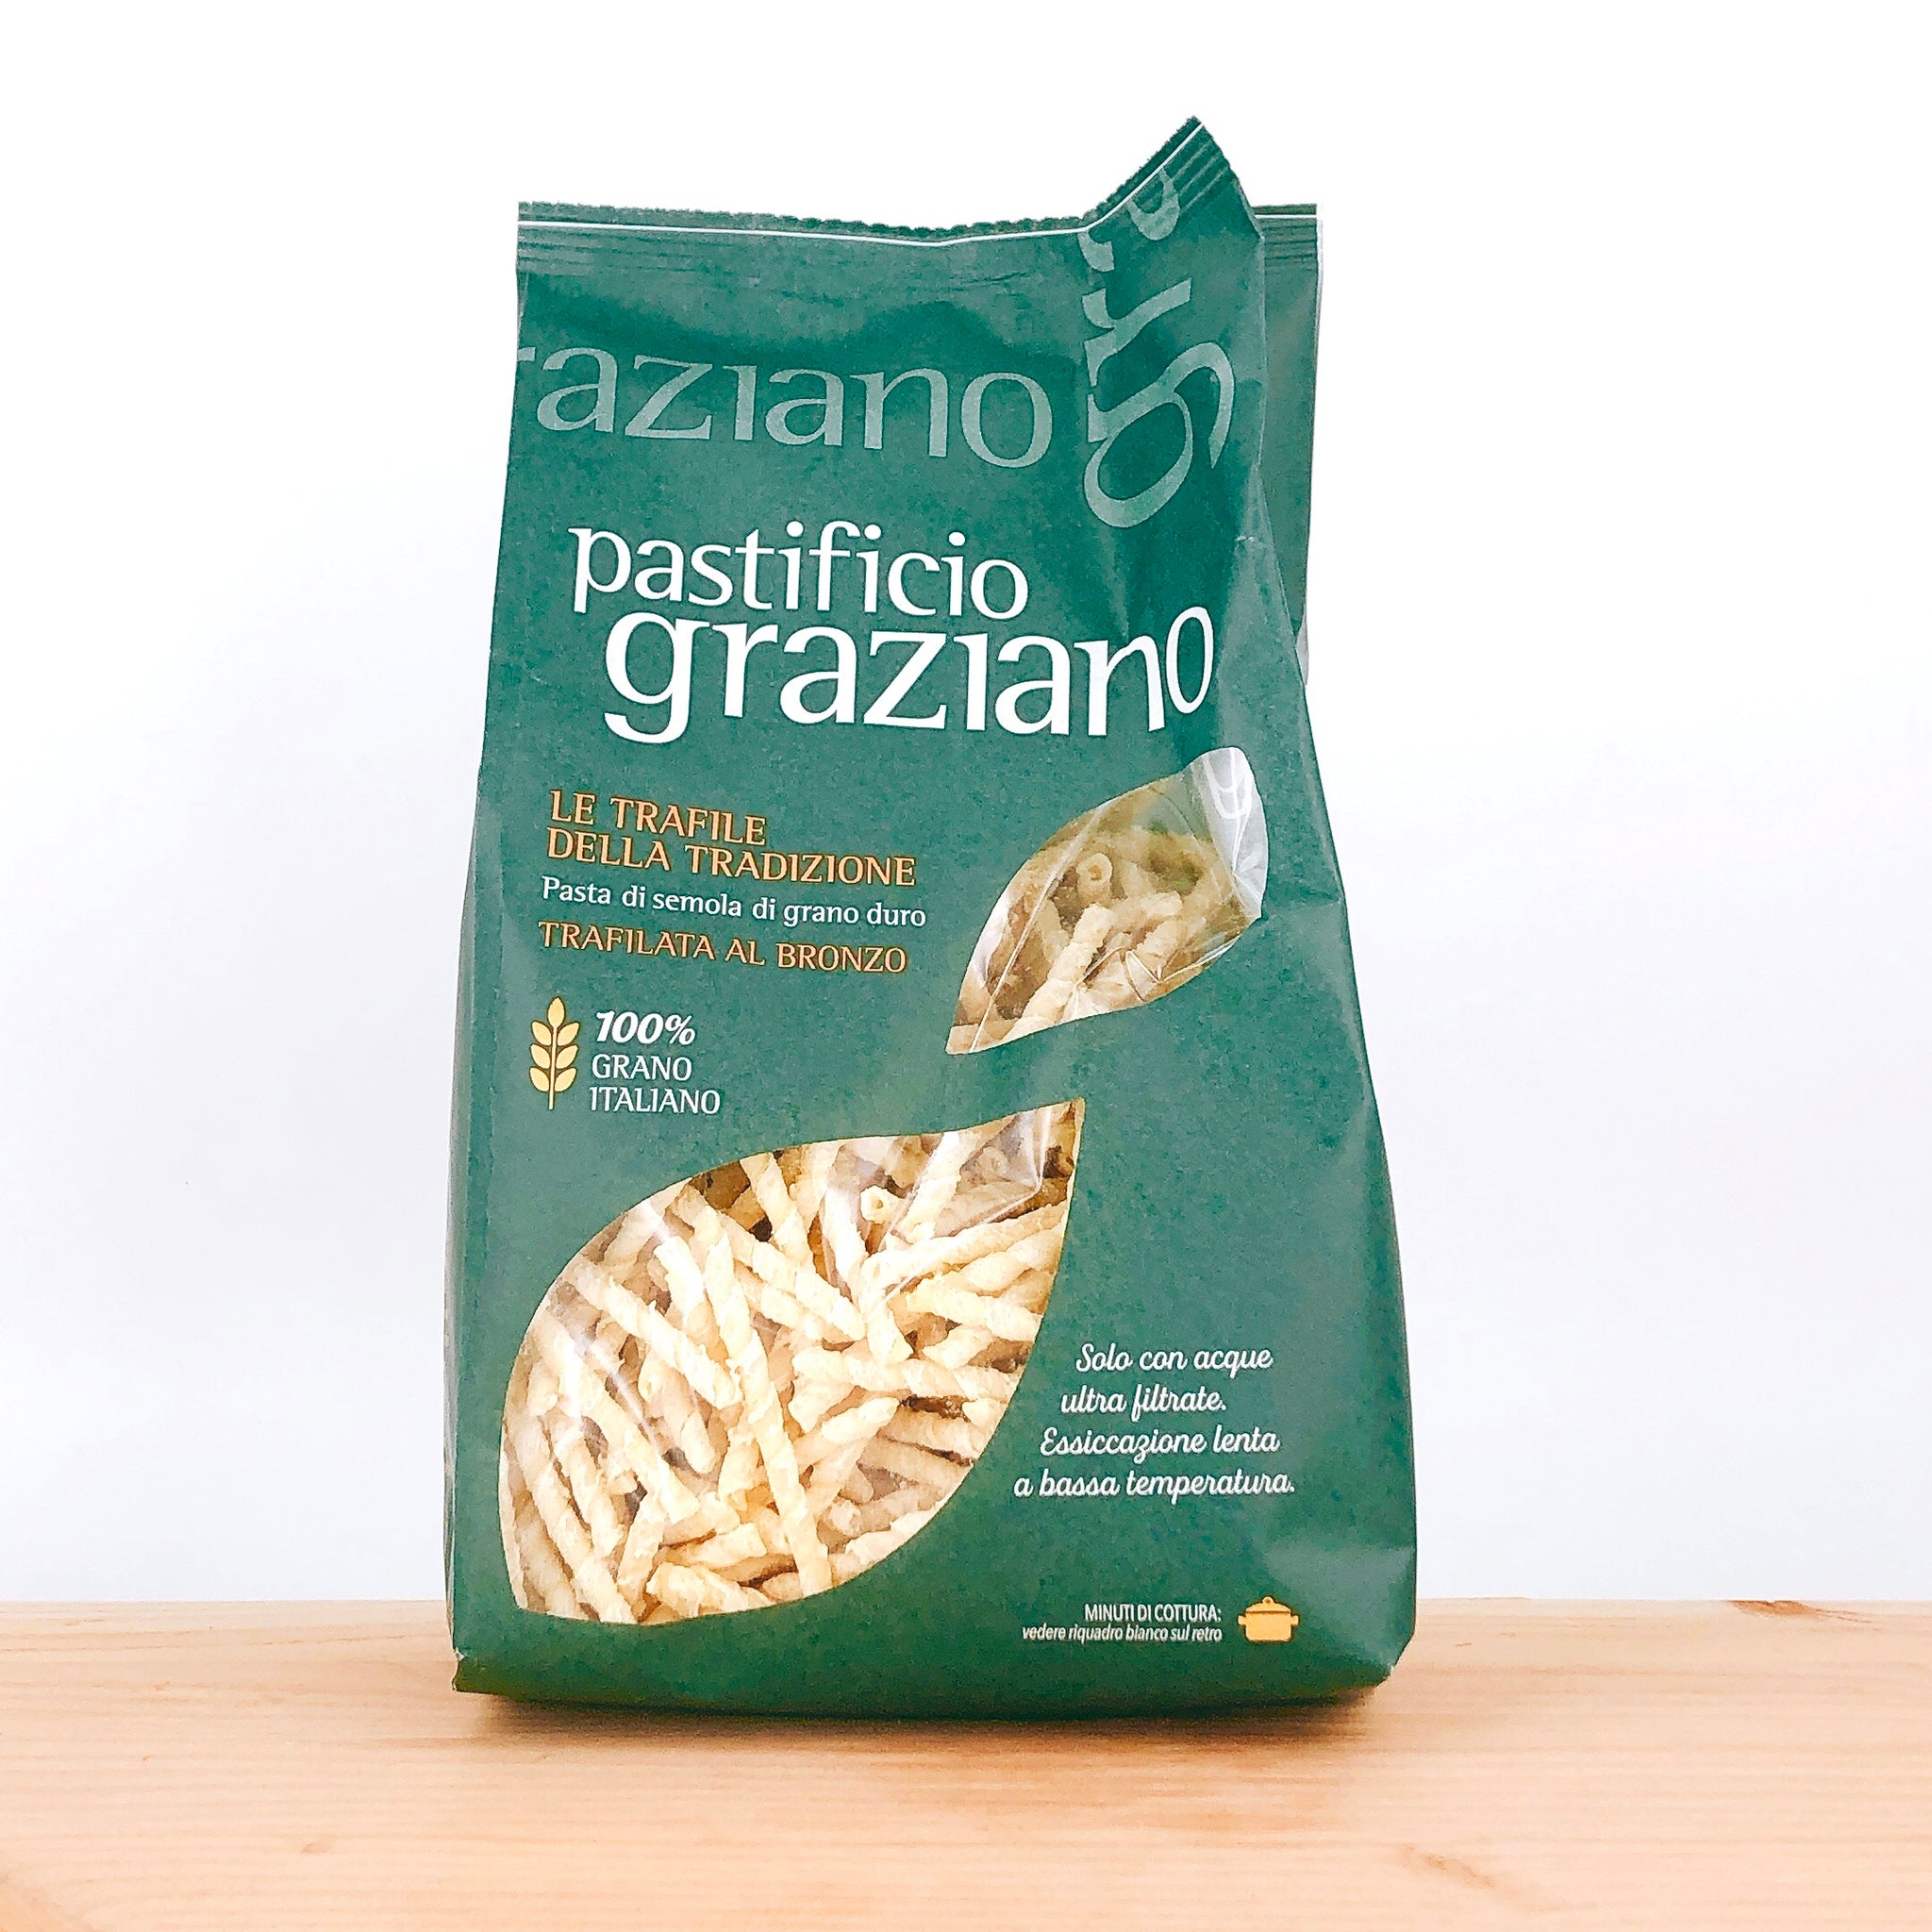 Graziano Fussili - Italienische Feinkost - Lebensmittel Lieferservice - LuisaKocht Shop